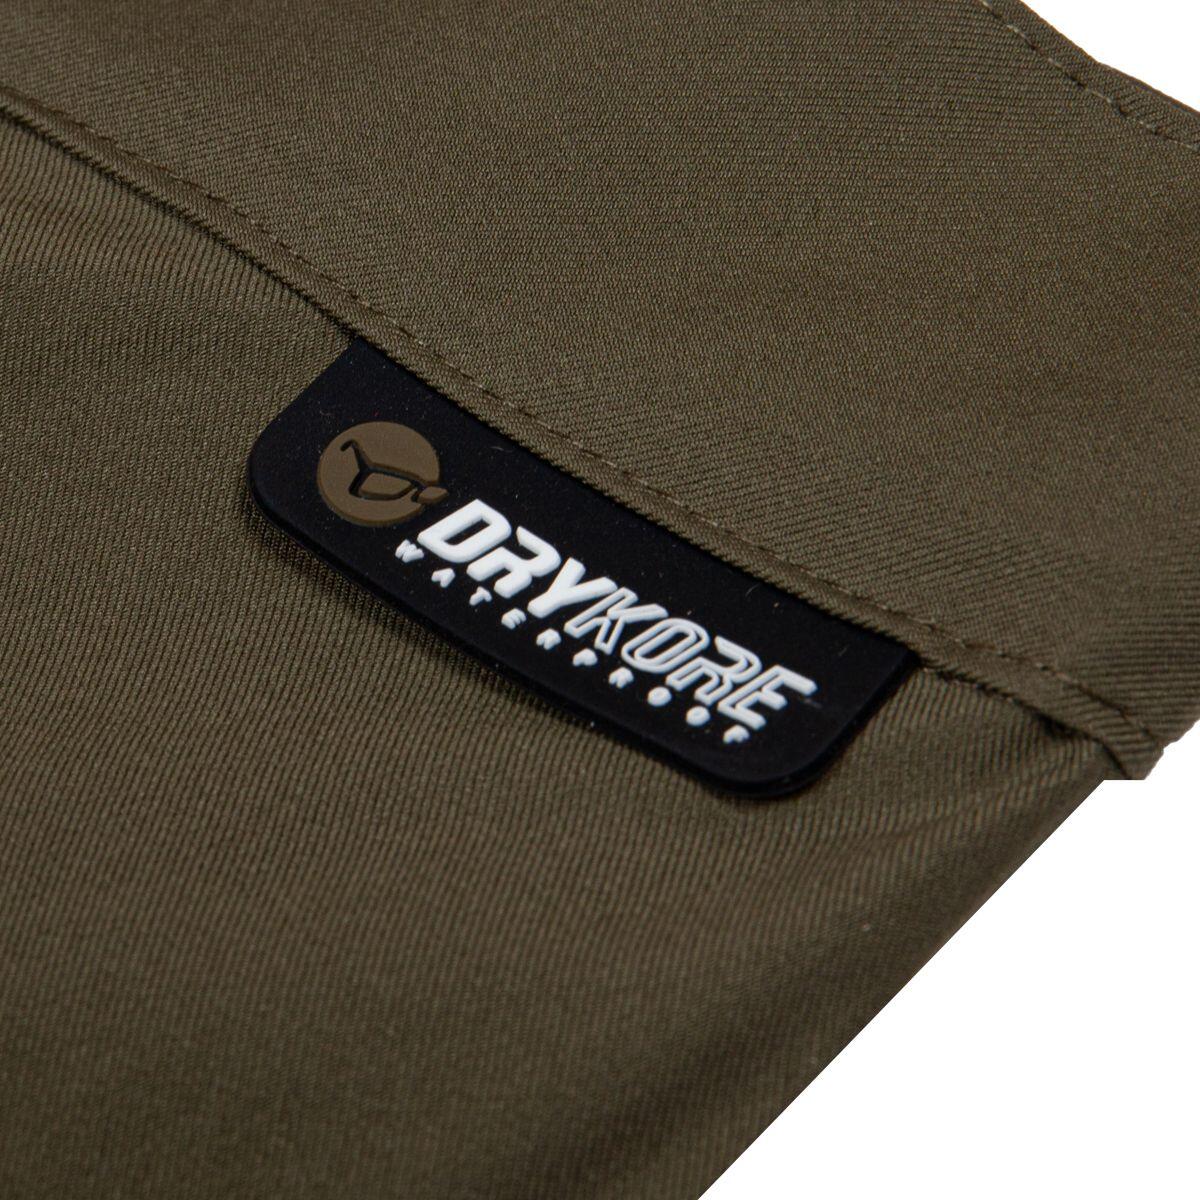 Korda Kore DryKore Jacket or Trousers / Carp Fishing Waterproof